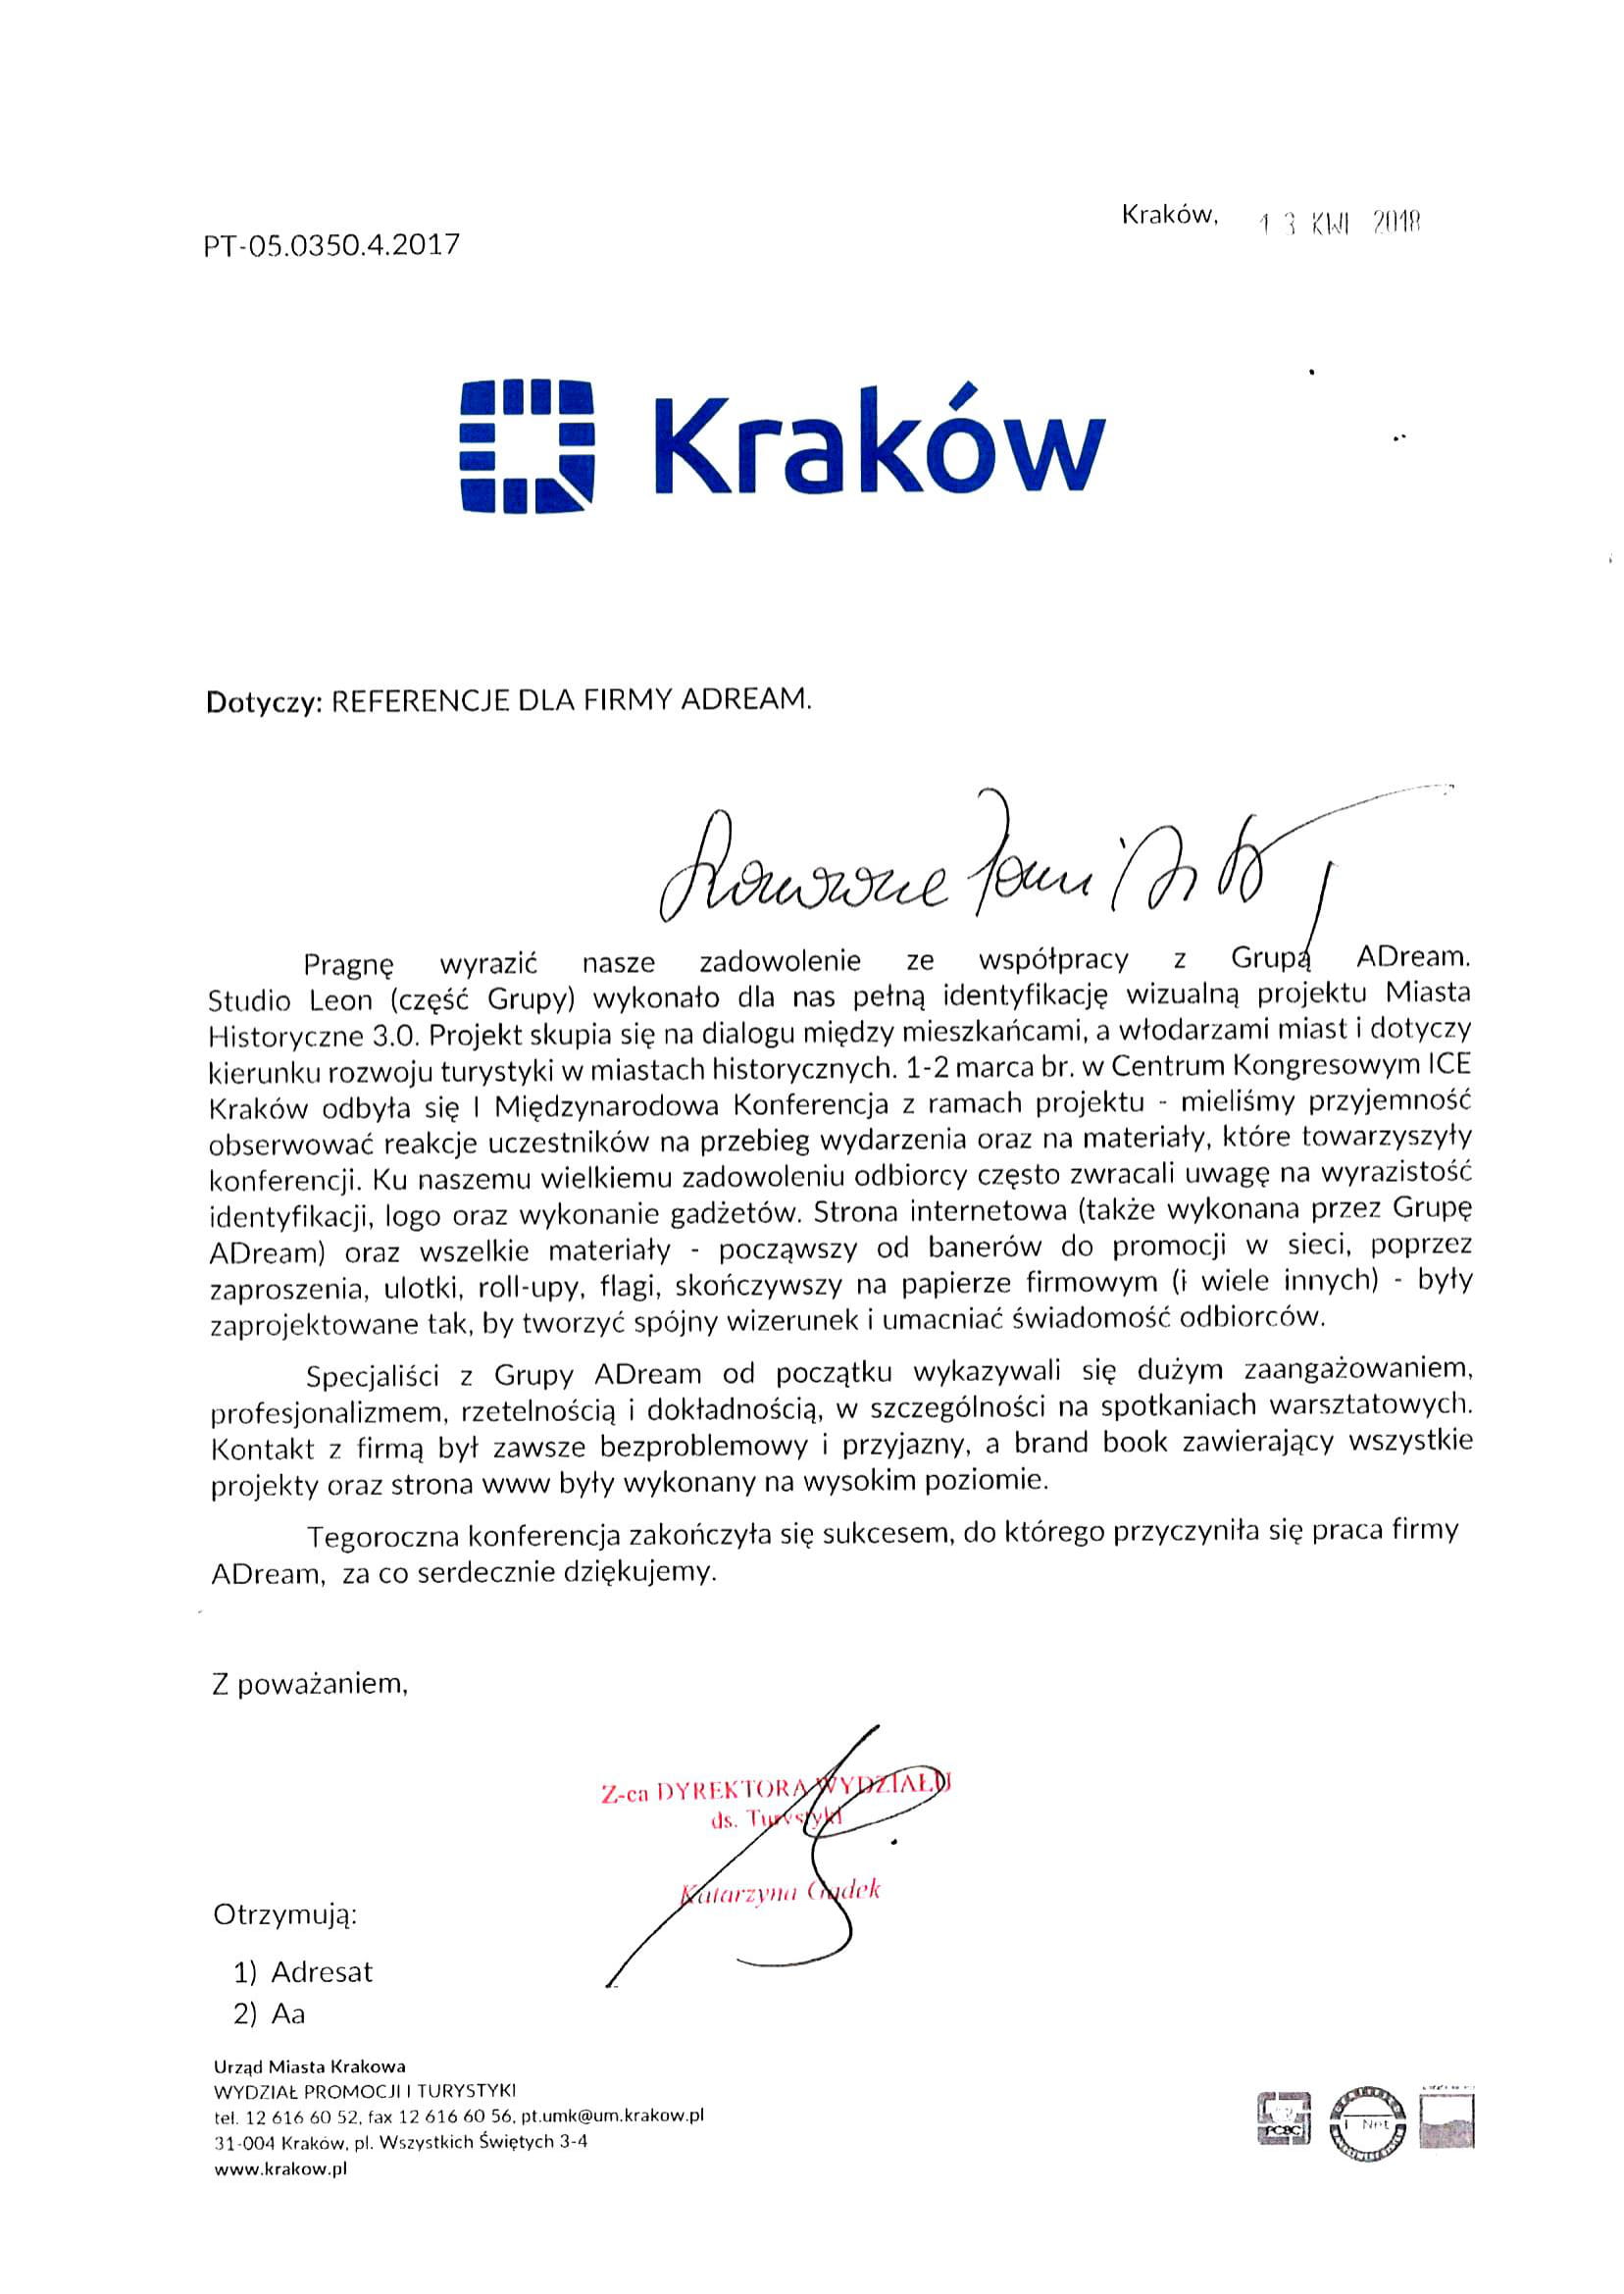 Urząd Miasta Krakowa Wydział Promocji i Turystyki